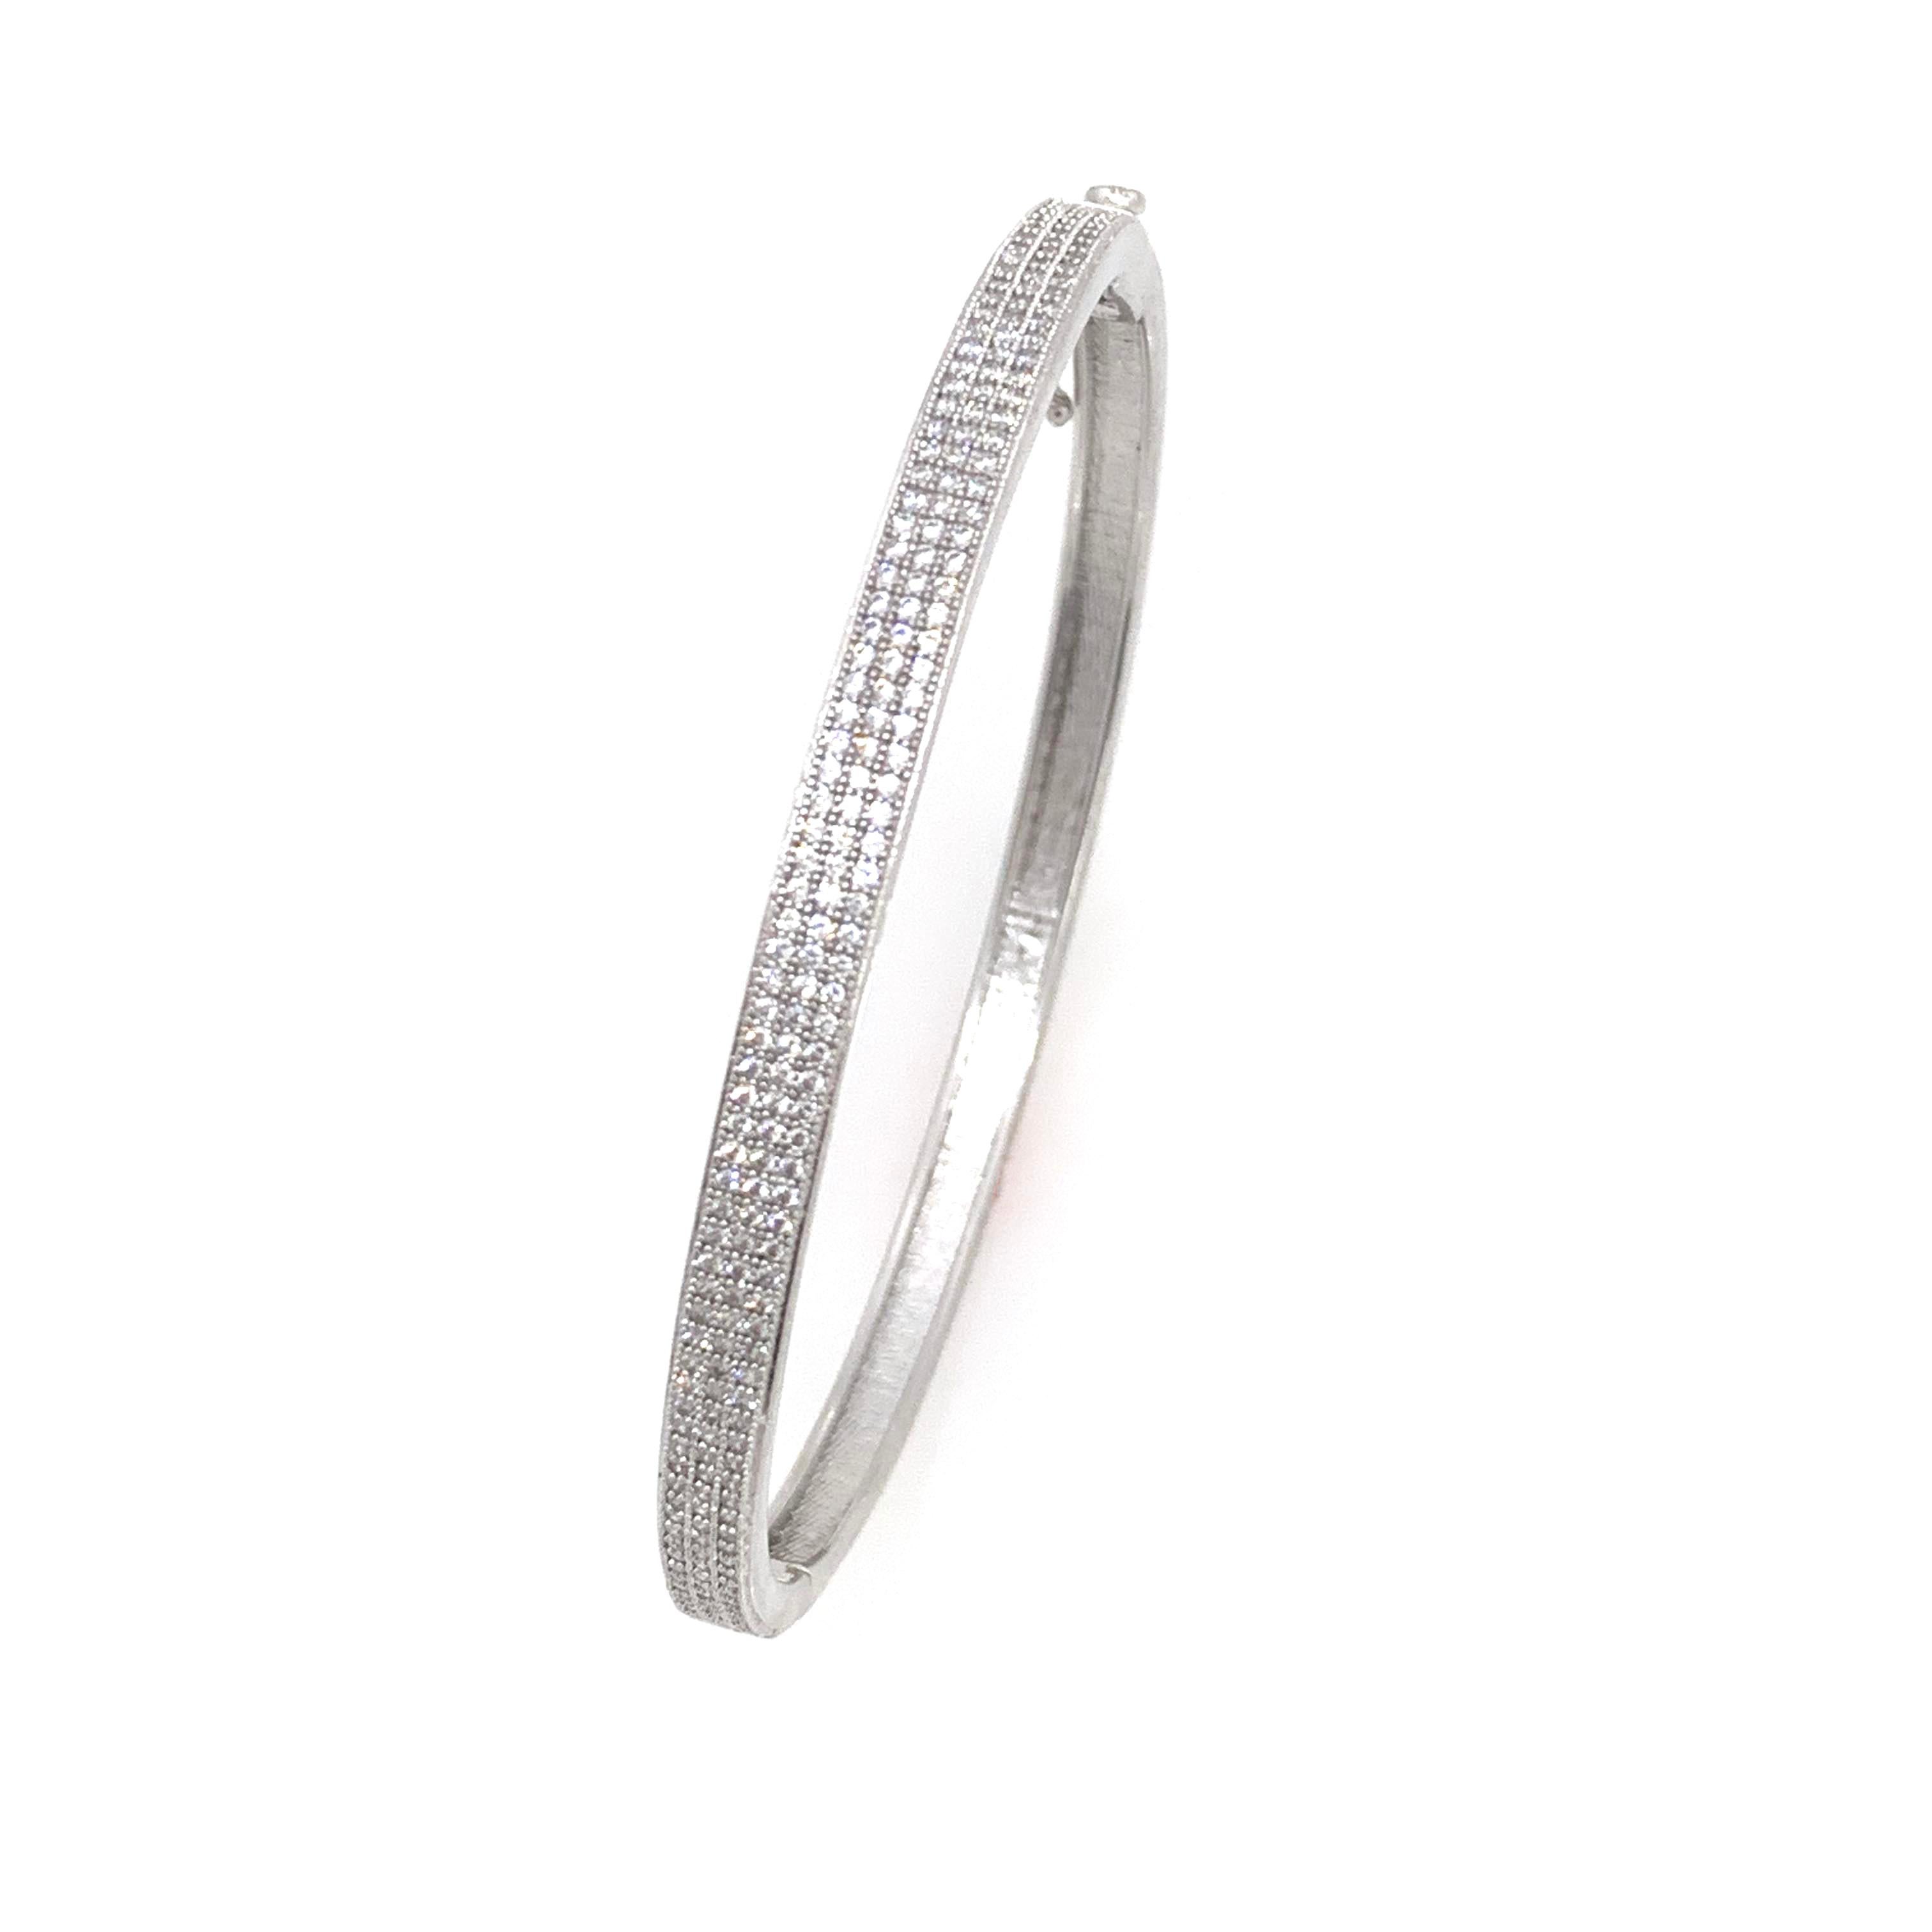 3-reihiges Armband aus Sterlingsilber mit simulierten Diamanten in Mikropave-Technik.

Dieses schicke und moderne Armband besteht aus über 200 runden simulierten Diamanten, die auf platin-rhodiniertem Sterlingsilber mikrogefasst sind, und verfügt